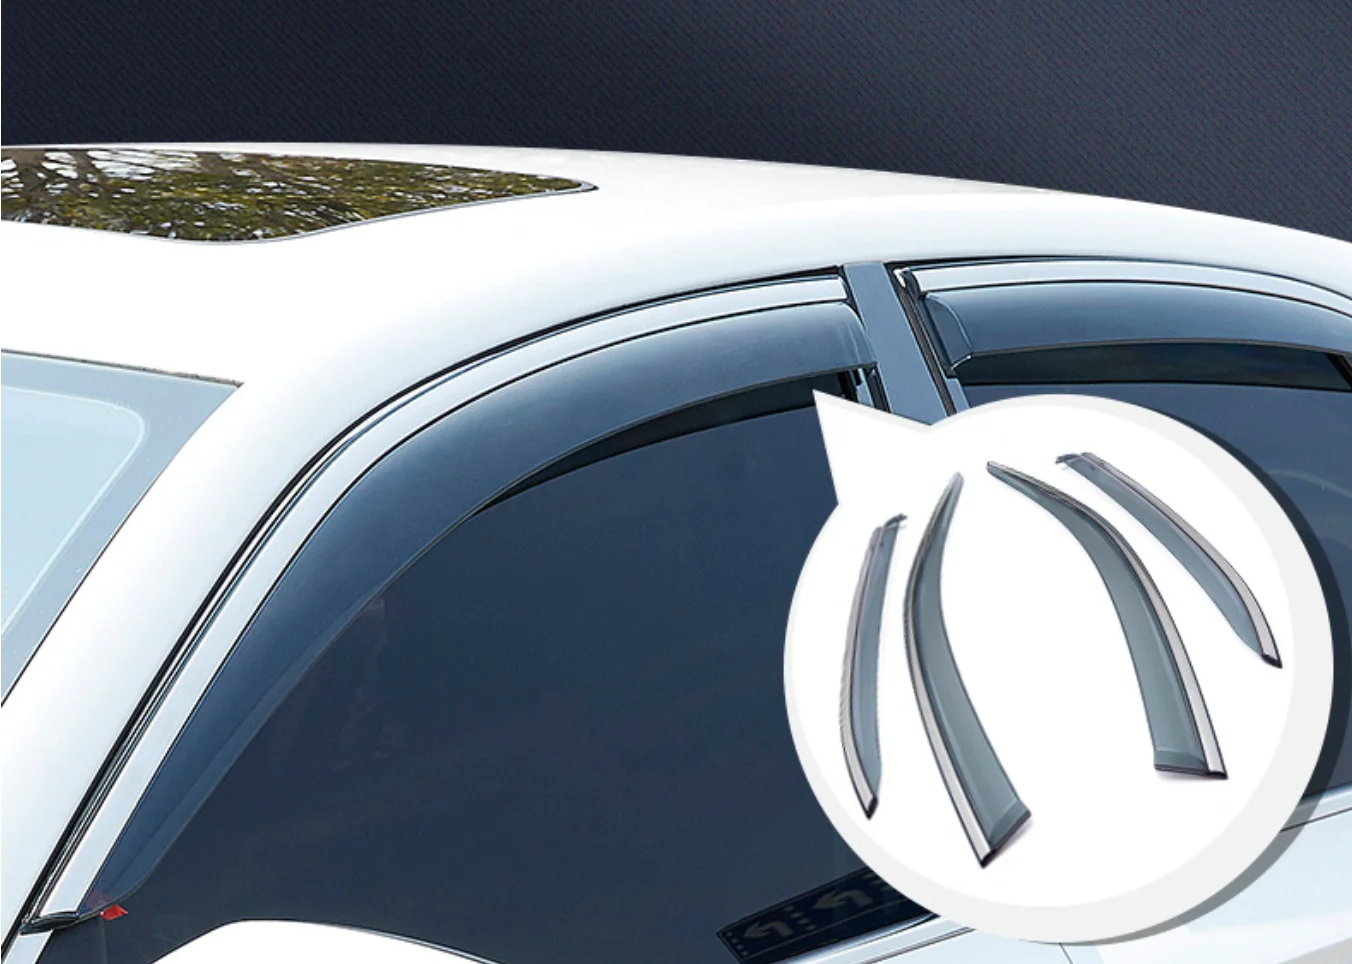 

Дефлектор боковых окон для Toyota Camry 2007-2018, защита от дыма, дождя, солнца, вентиляционного отверстия, козырек от дождя